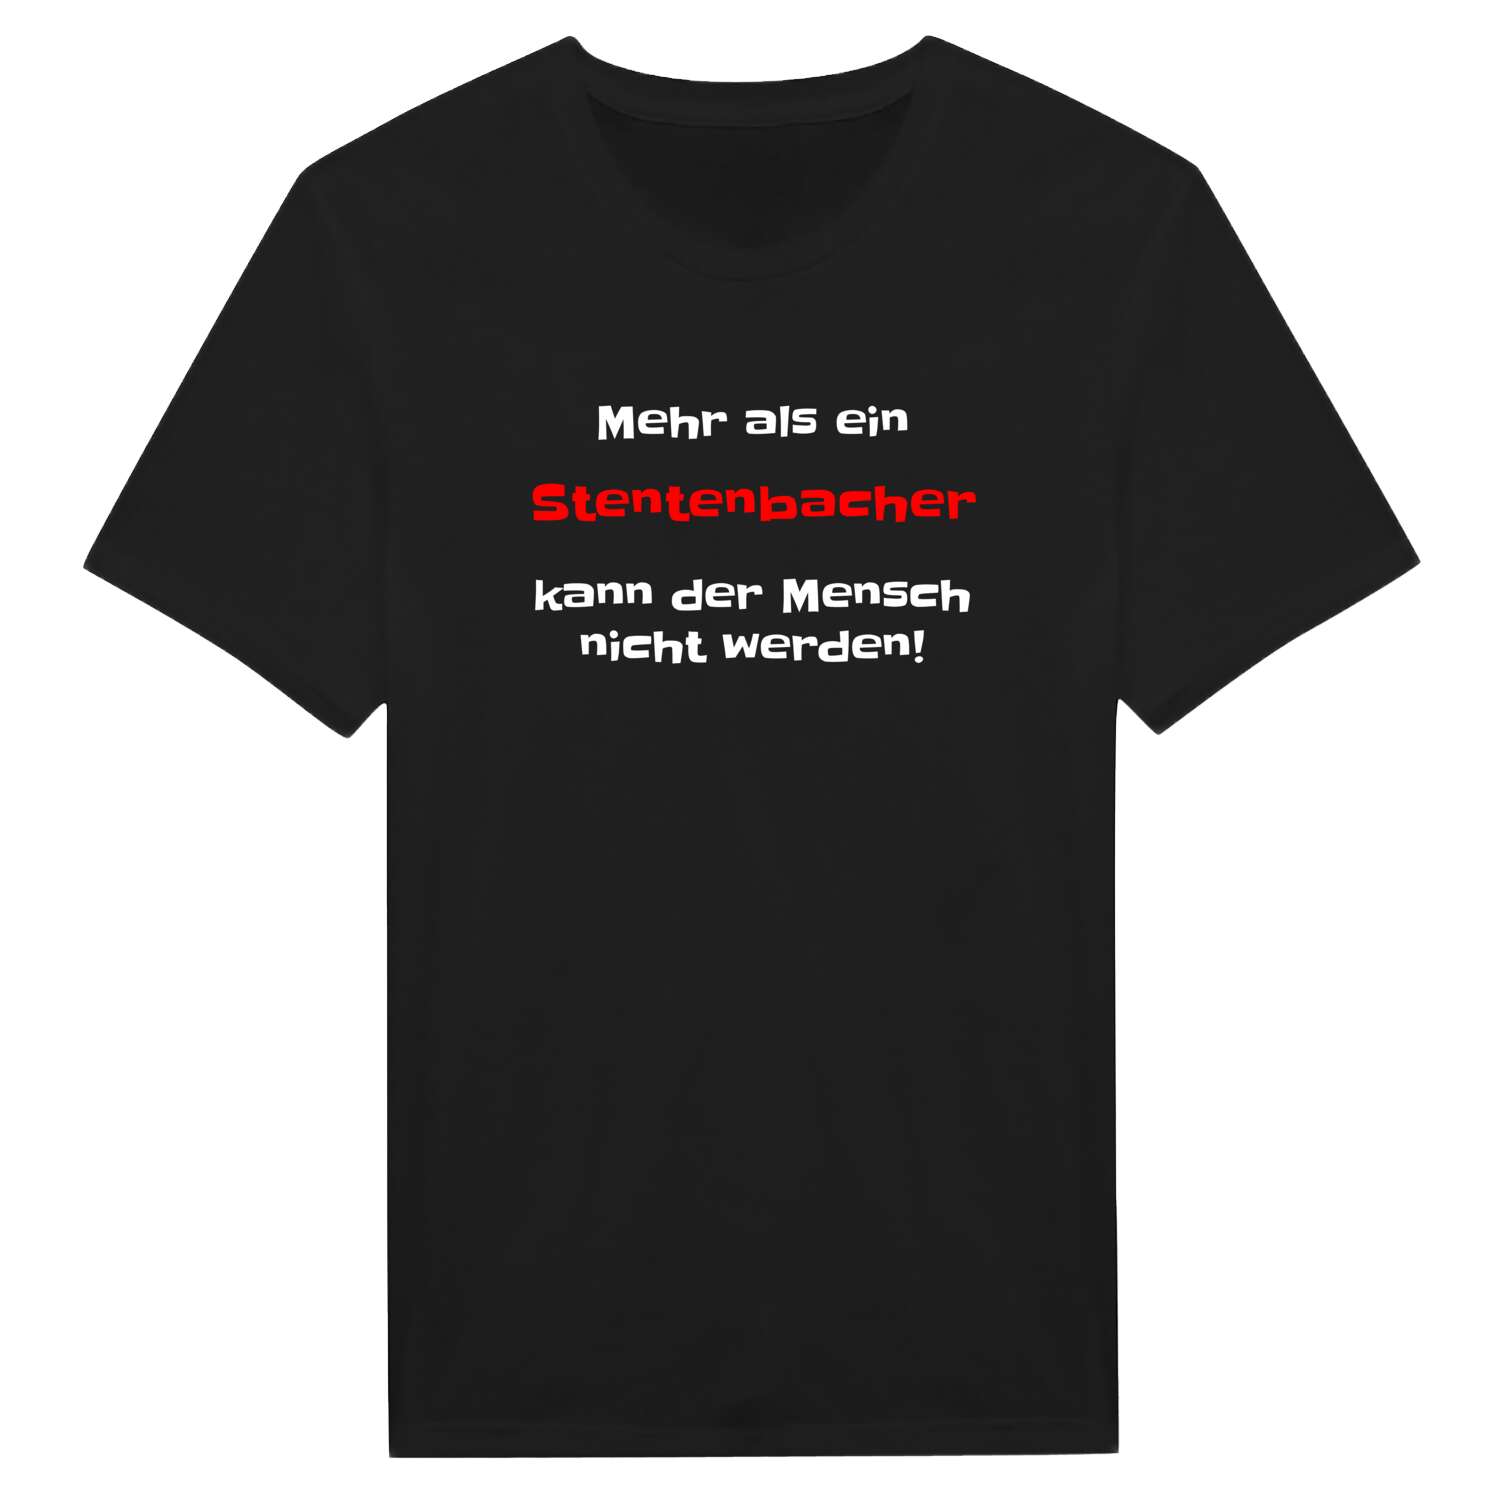 Stentenbach T-Shirt »Mehr als ein«